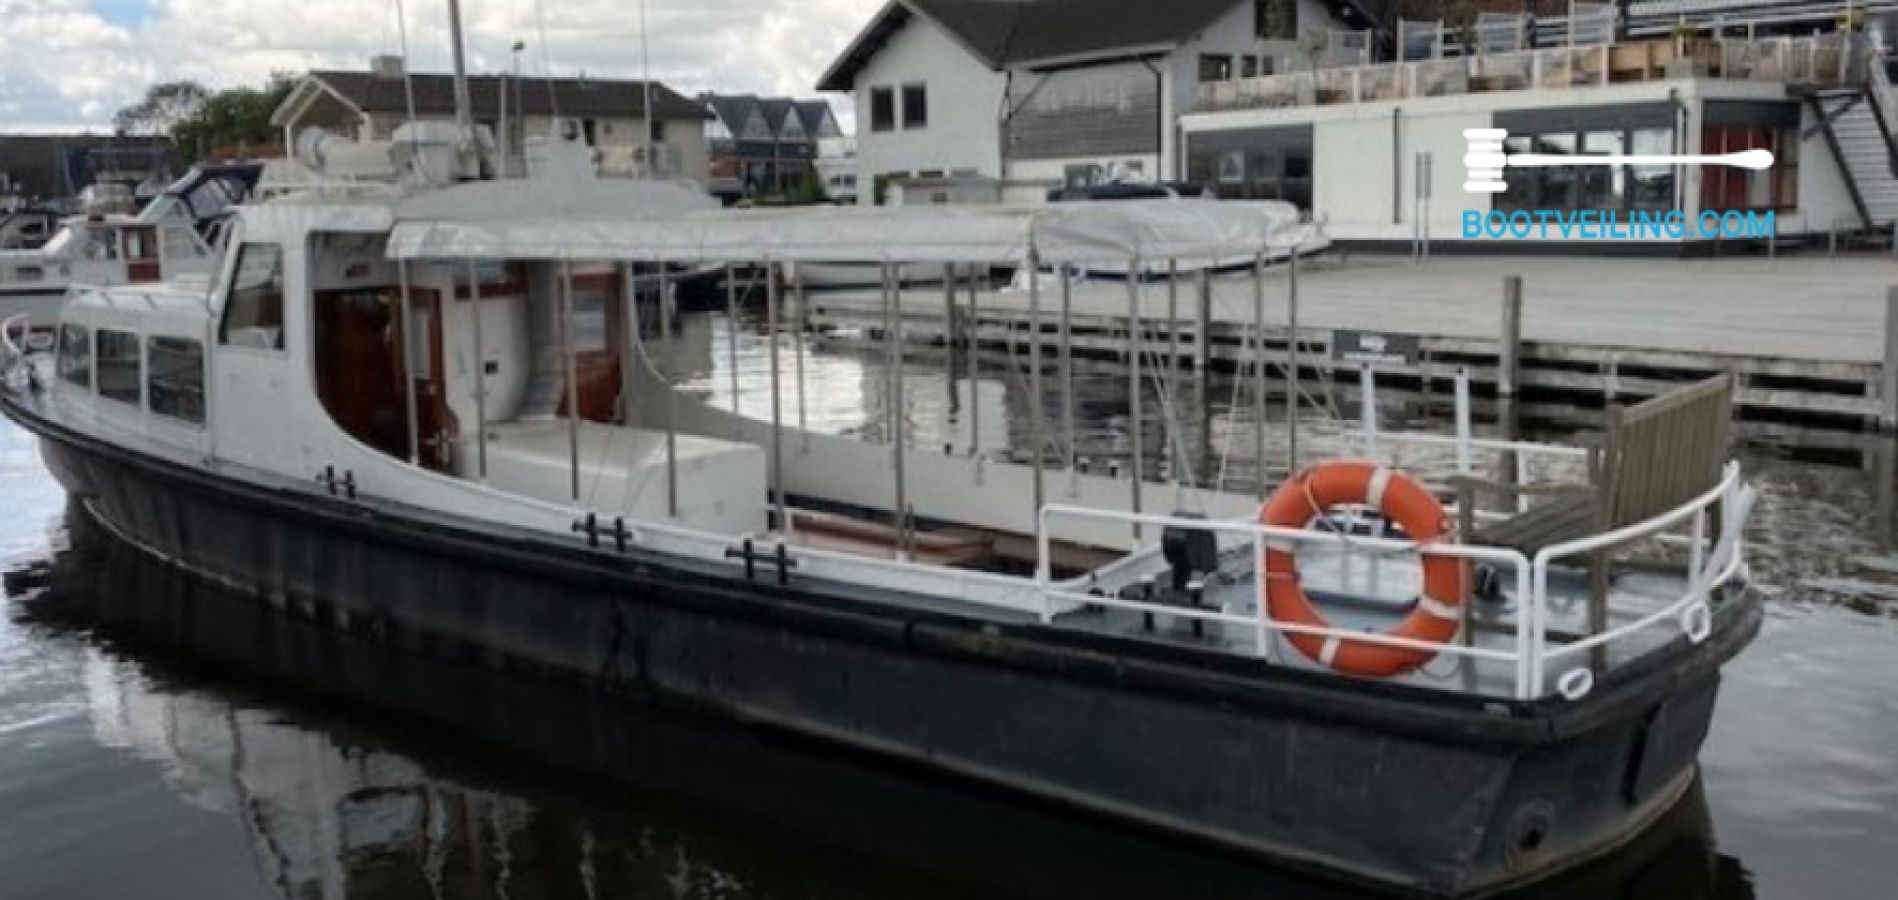 vaak Onderhoud kam Duitse Patrouilleboot - 14.95 M - Motorjacht te koop - Bootveiling.com